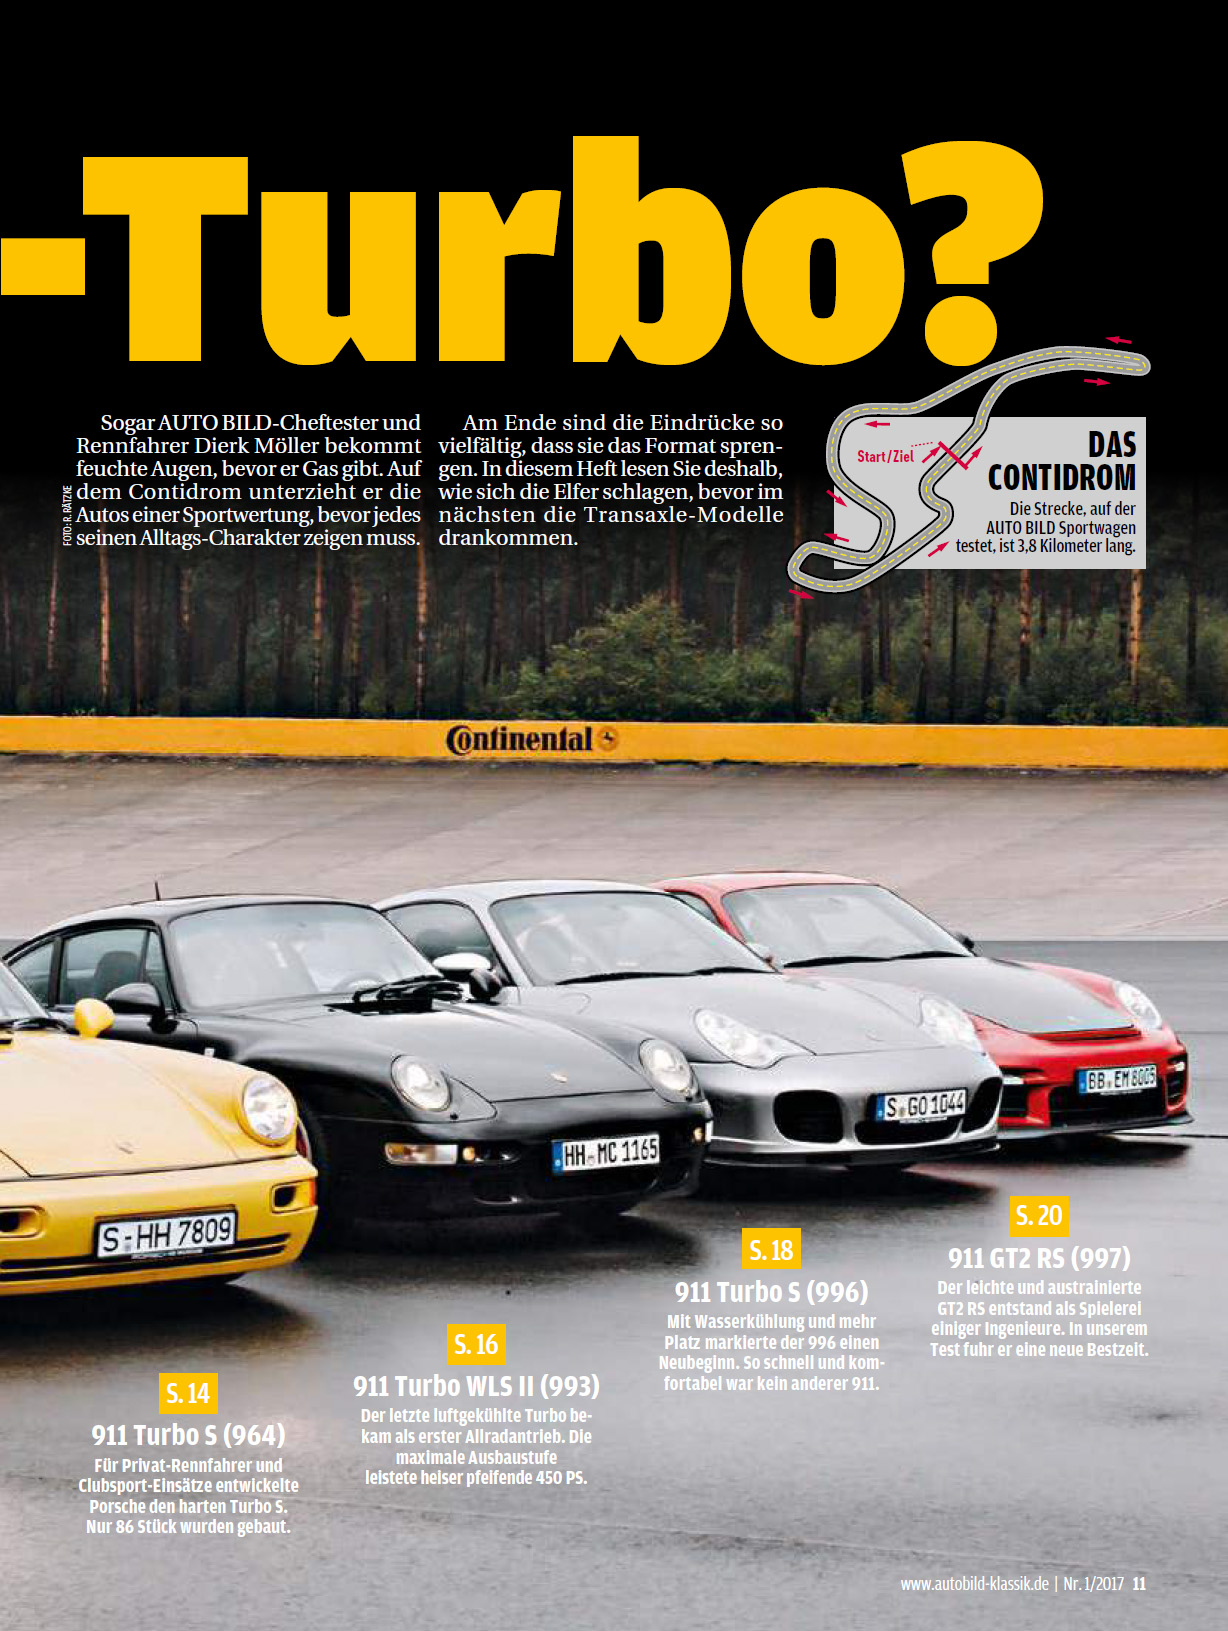 Porsche 911 Turbo Buch book 930 3,0 RSR 964 993 GT2 996 997 991 S Daten 